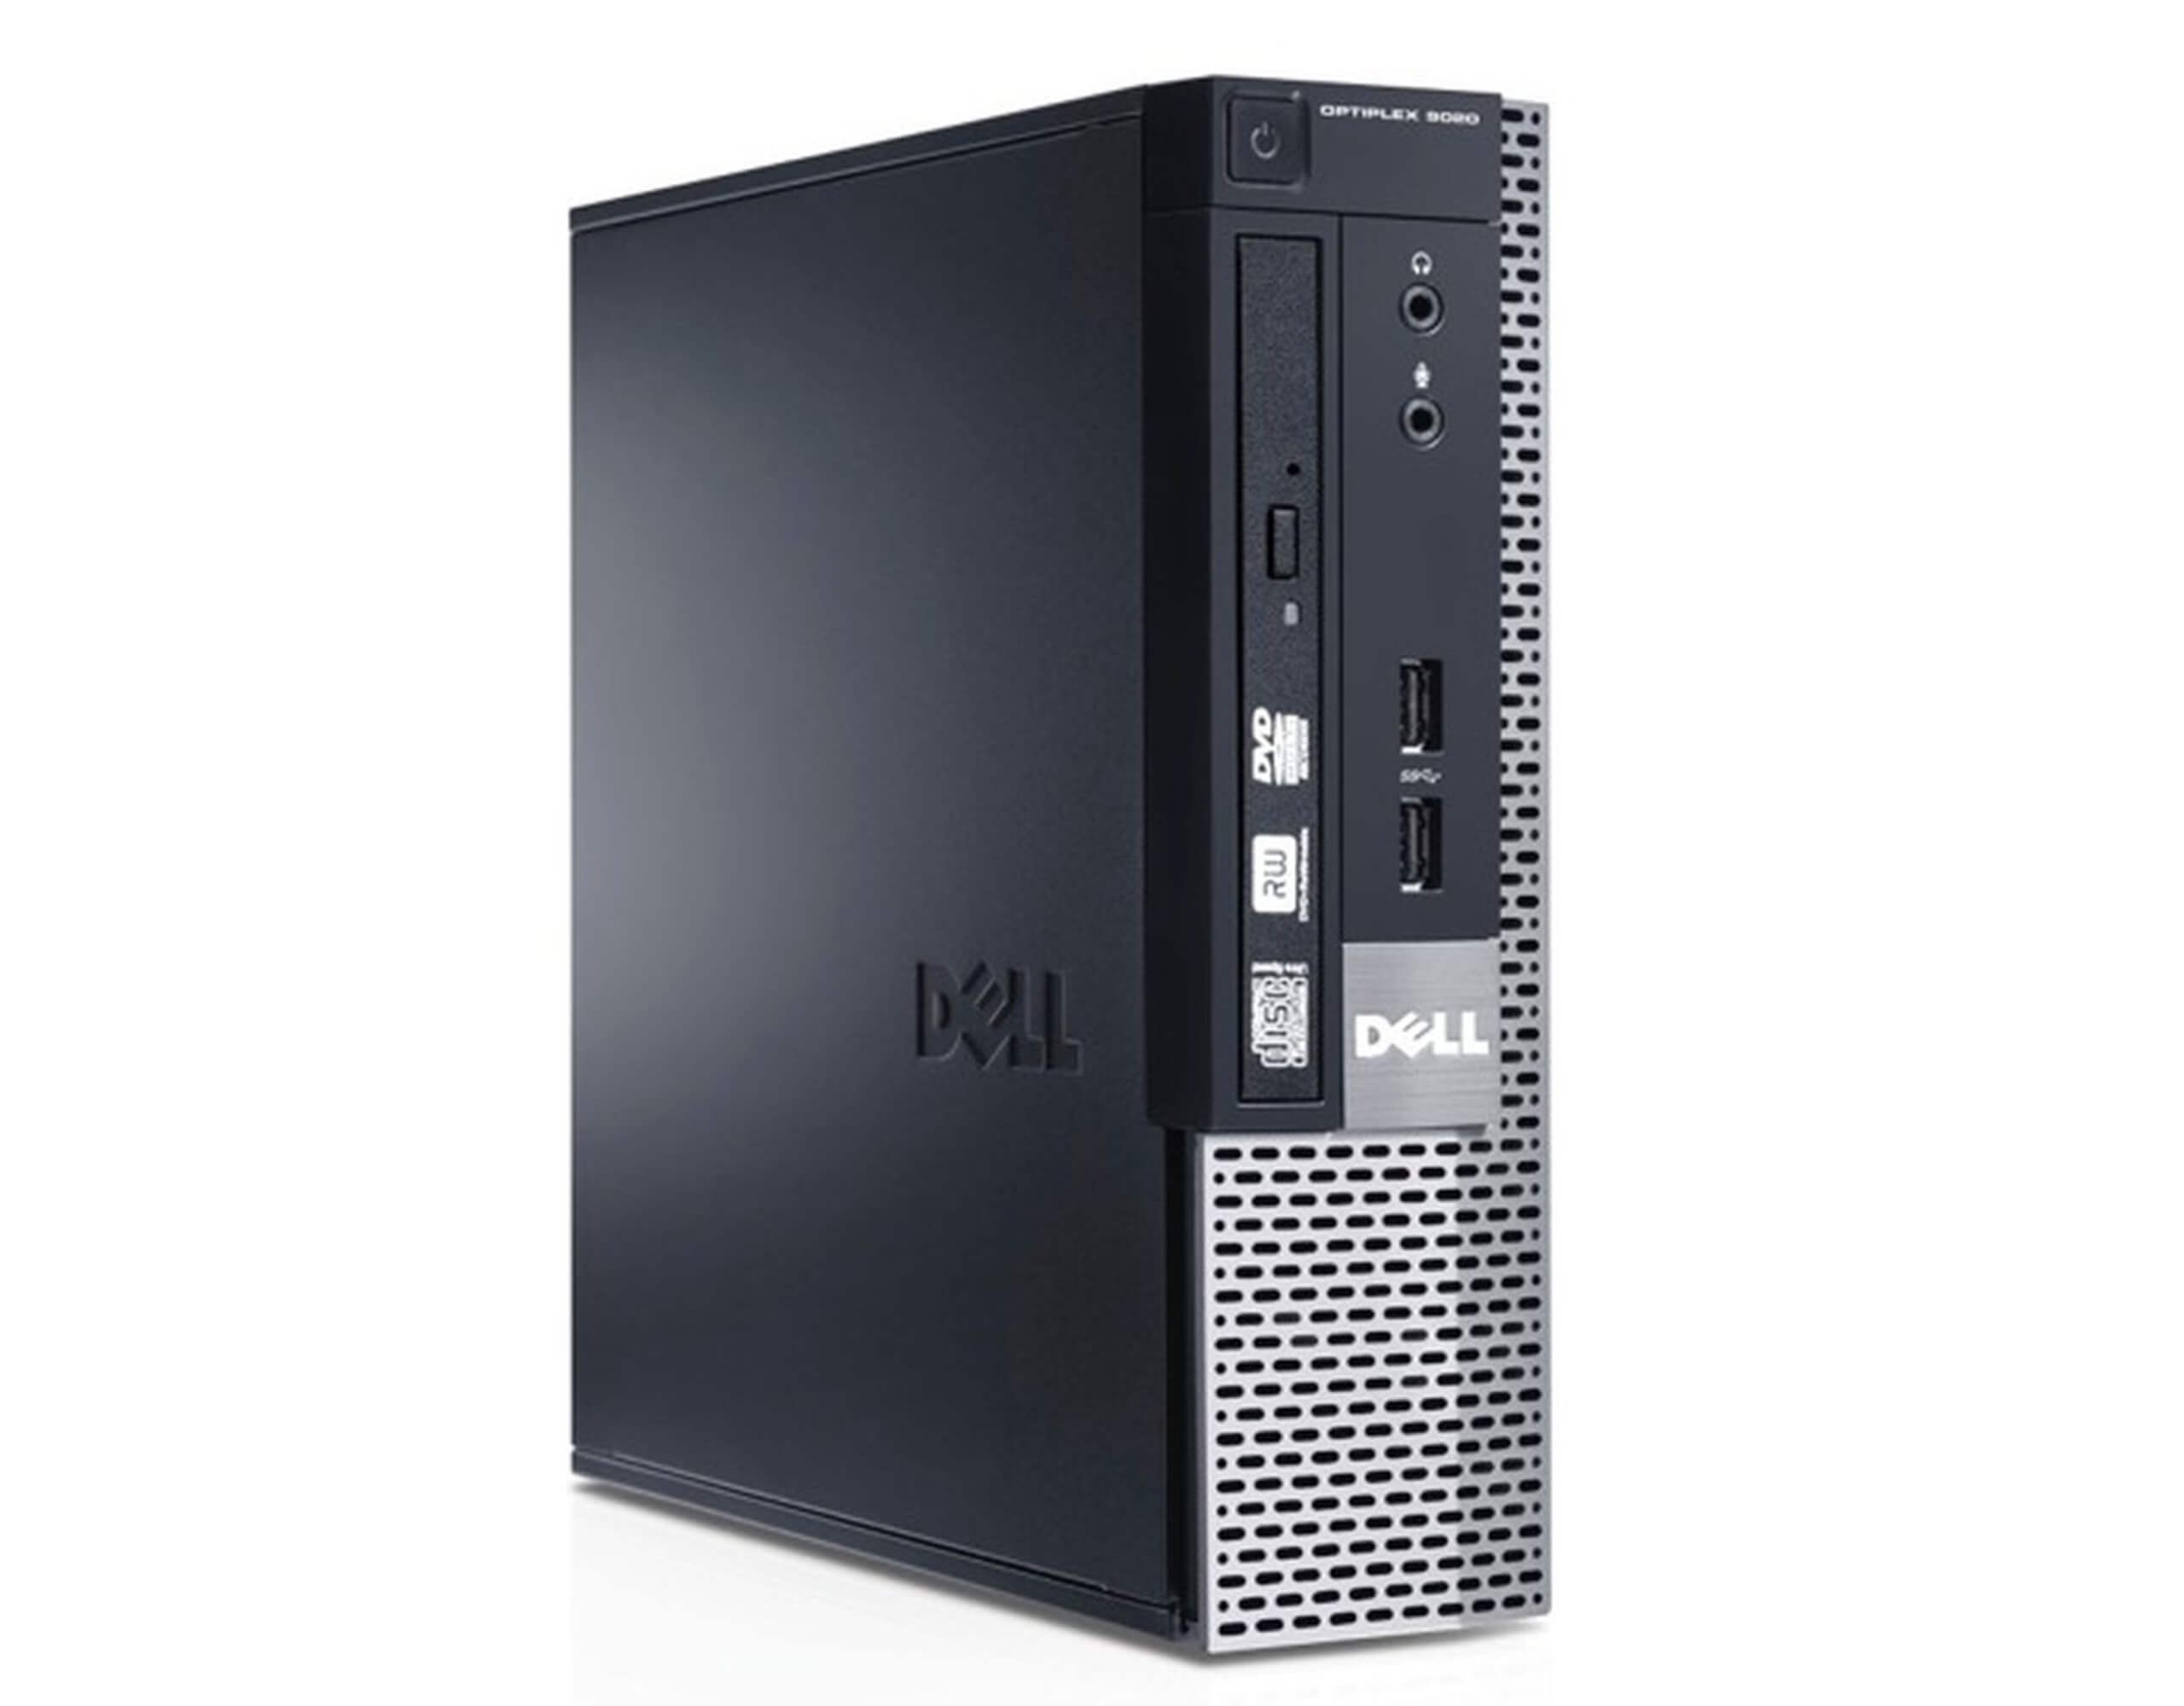 DELL 9020 USFF I7-4790S 3.2 / 8192 MB DDR3 / 256 GB SSD / DVD-RW / WINDOWS 10 PRO